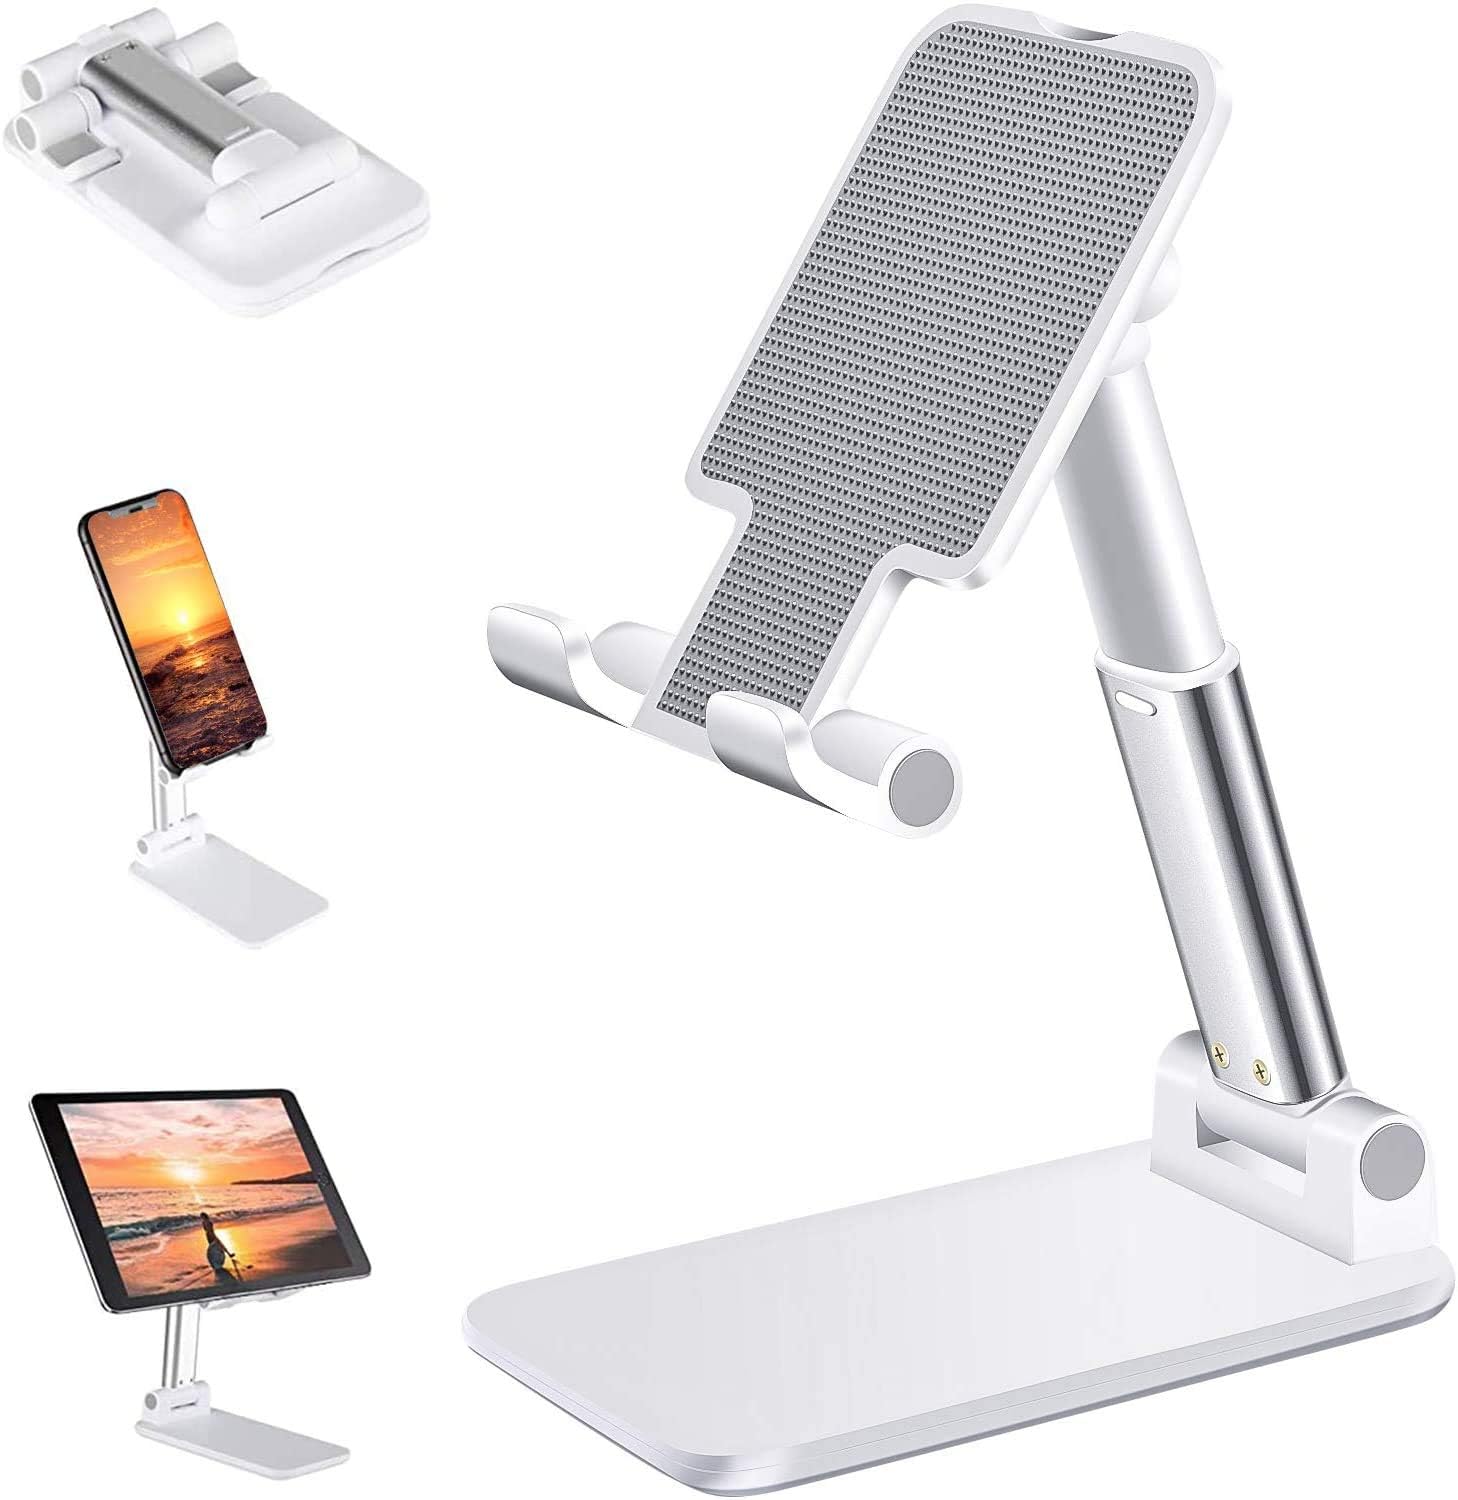 Fully Foldable Tabletop Desktop Tablet Mobile Stand Holder - Angle & Height Adjustable for Desk, Cradle, Dock, Compatible with Smartphones & Tablets